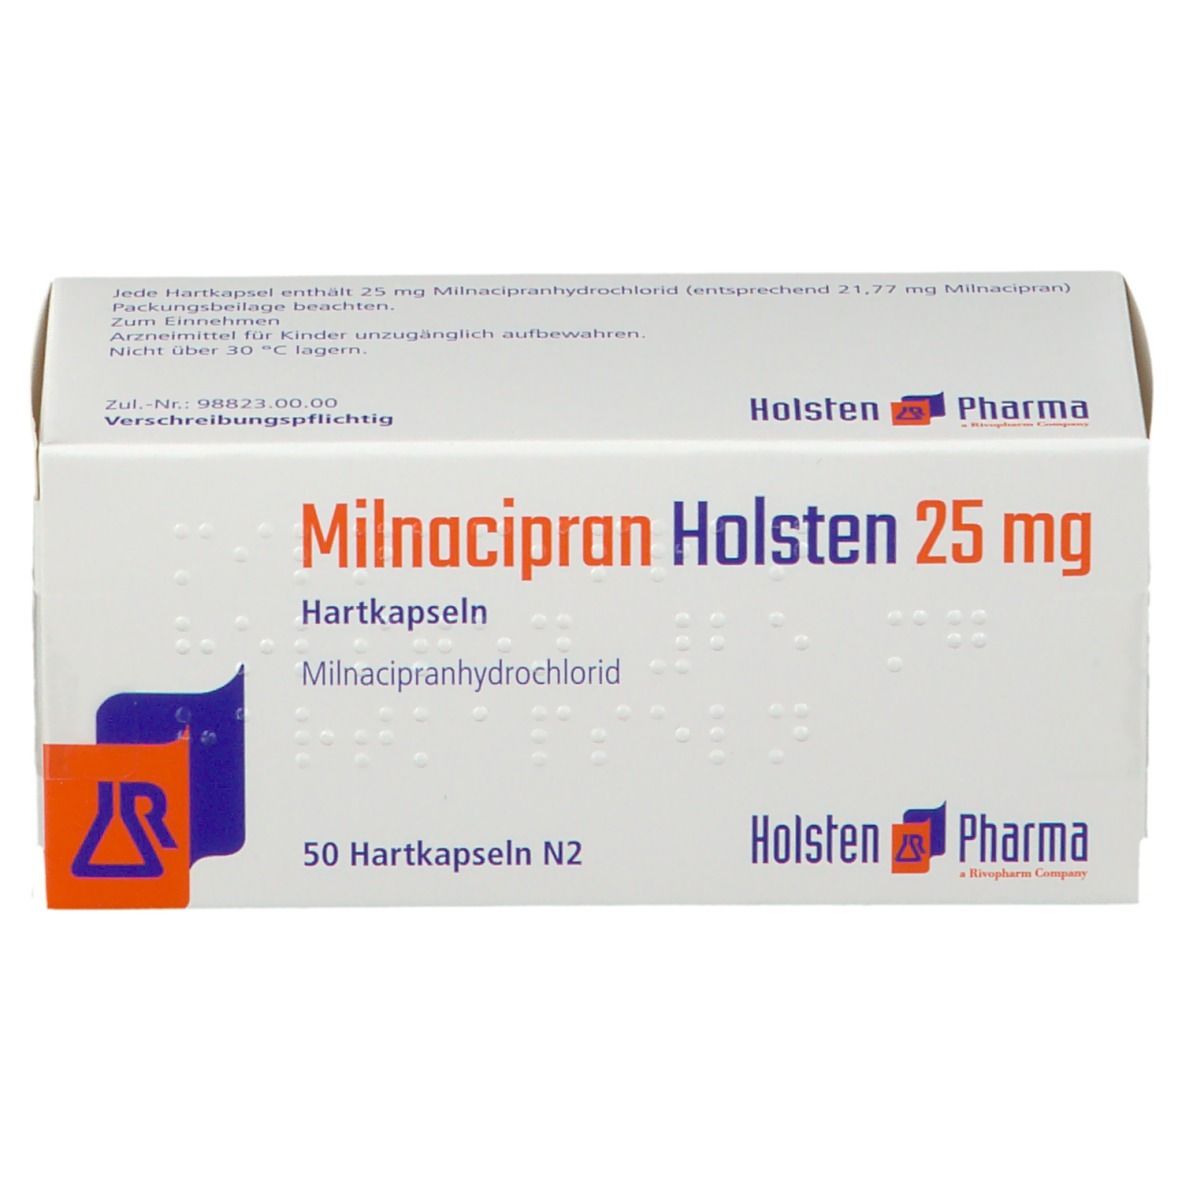 Milnacipran Holsten 25 mg